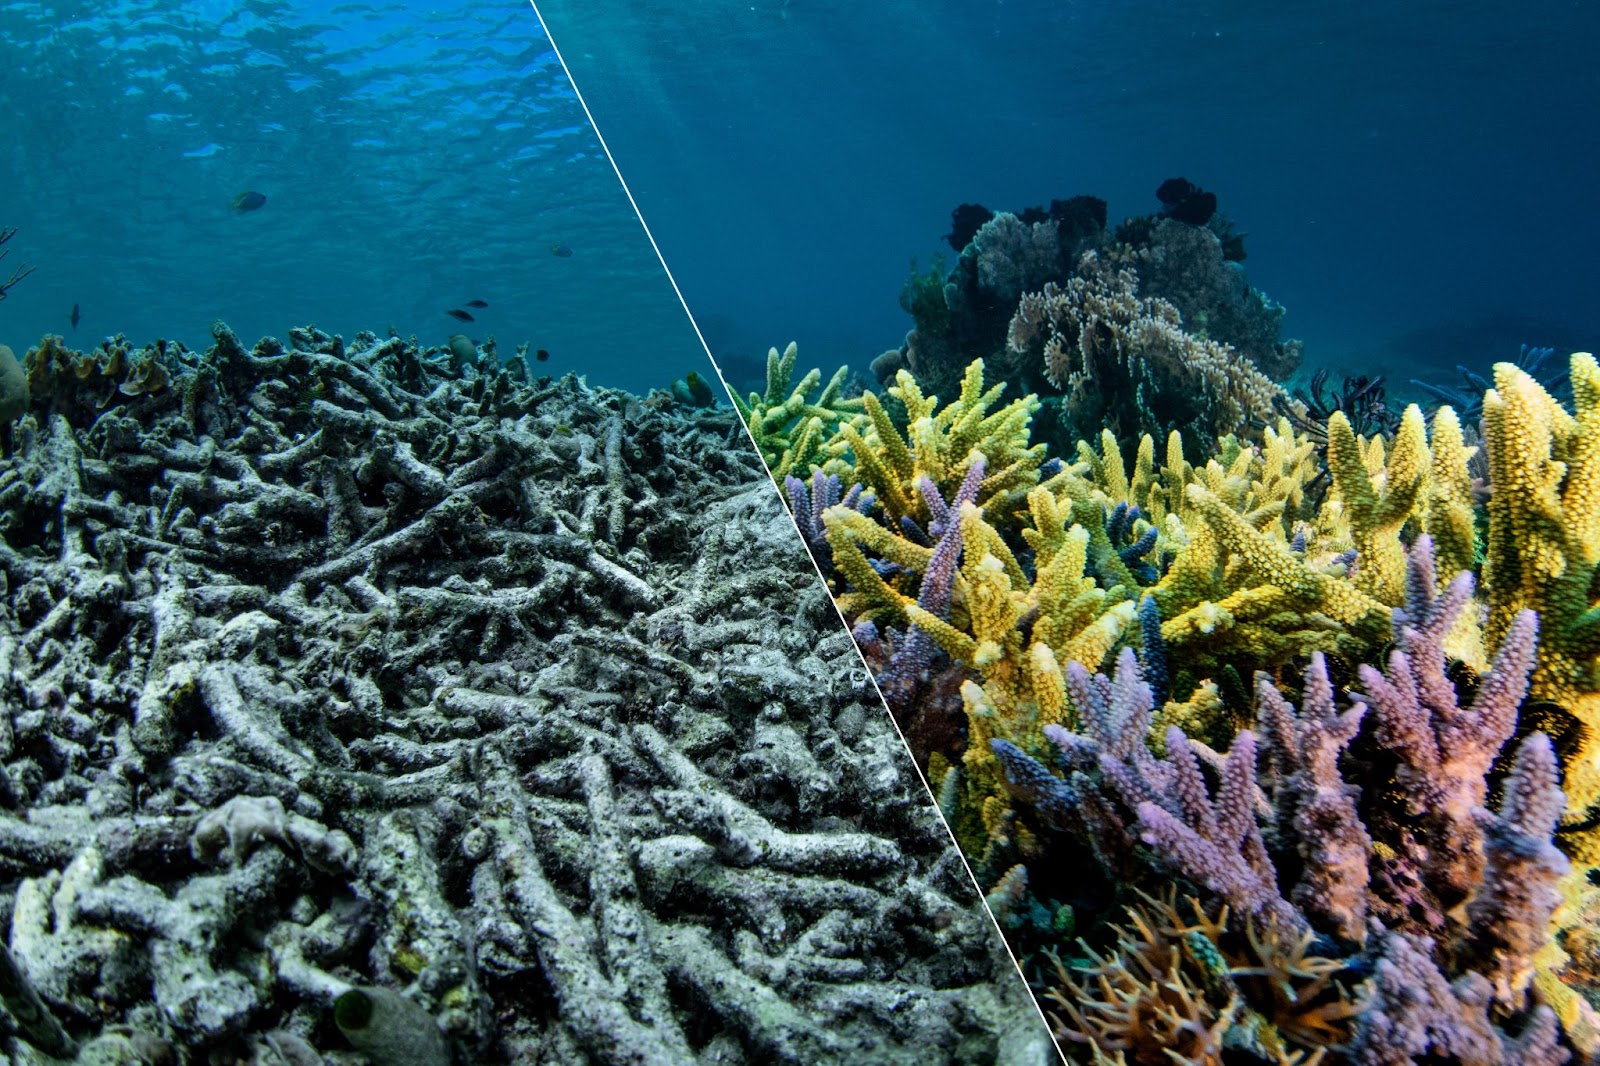 Obraz koralowca podzielony na pół: po lewej szary, bezbarwny koralowieczapada się, gdy morze faluje nad nim. Po prawej widzimy koralowca stojącegopionowo, tętniącego życiem w żółciach, fioletach i różach. Kontrast międzyumierającym i zdrowymkoralowcem.